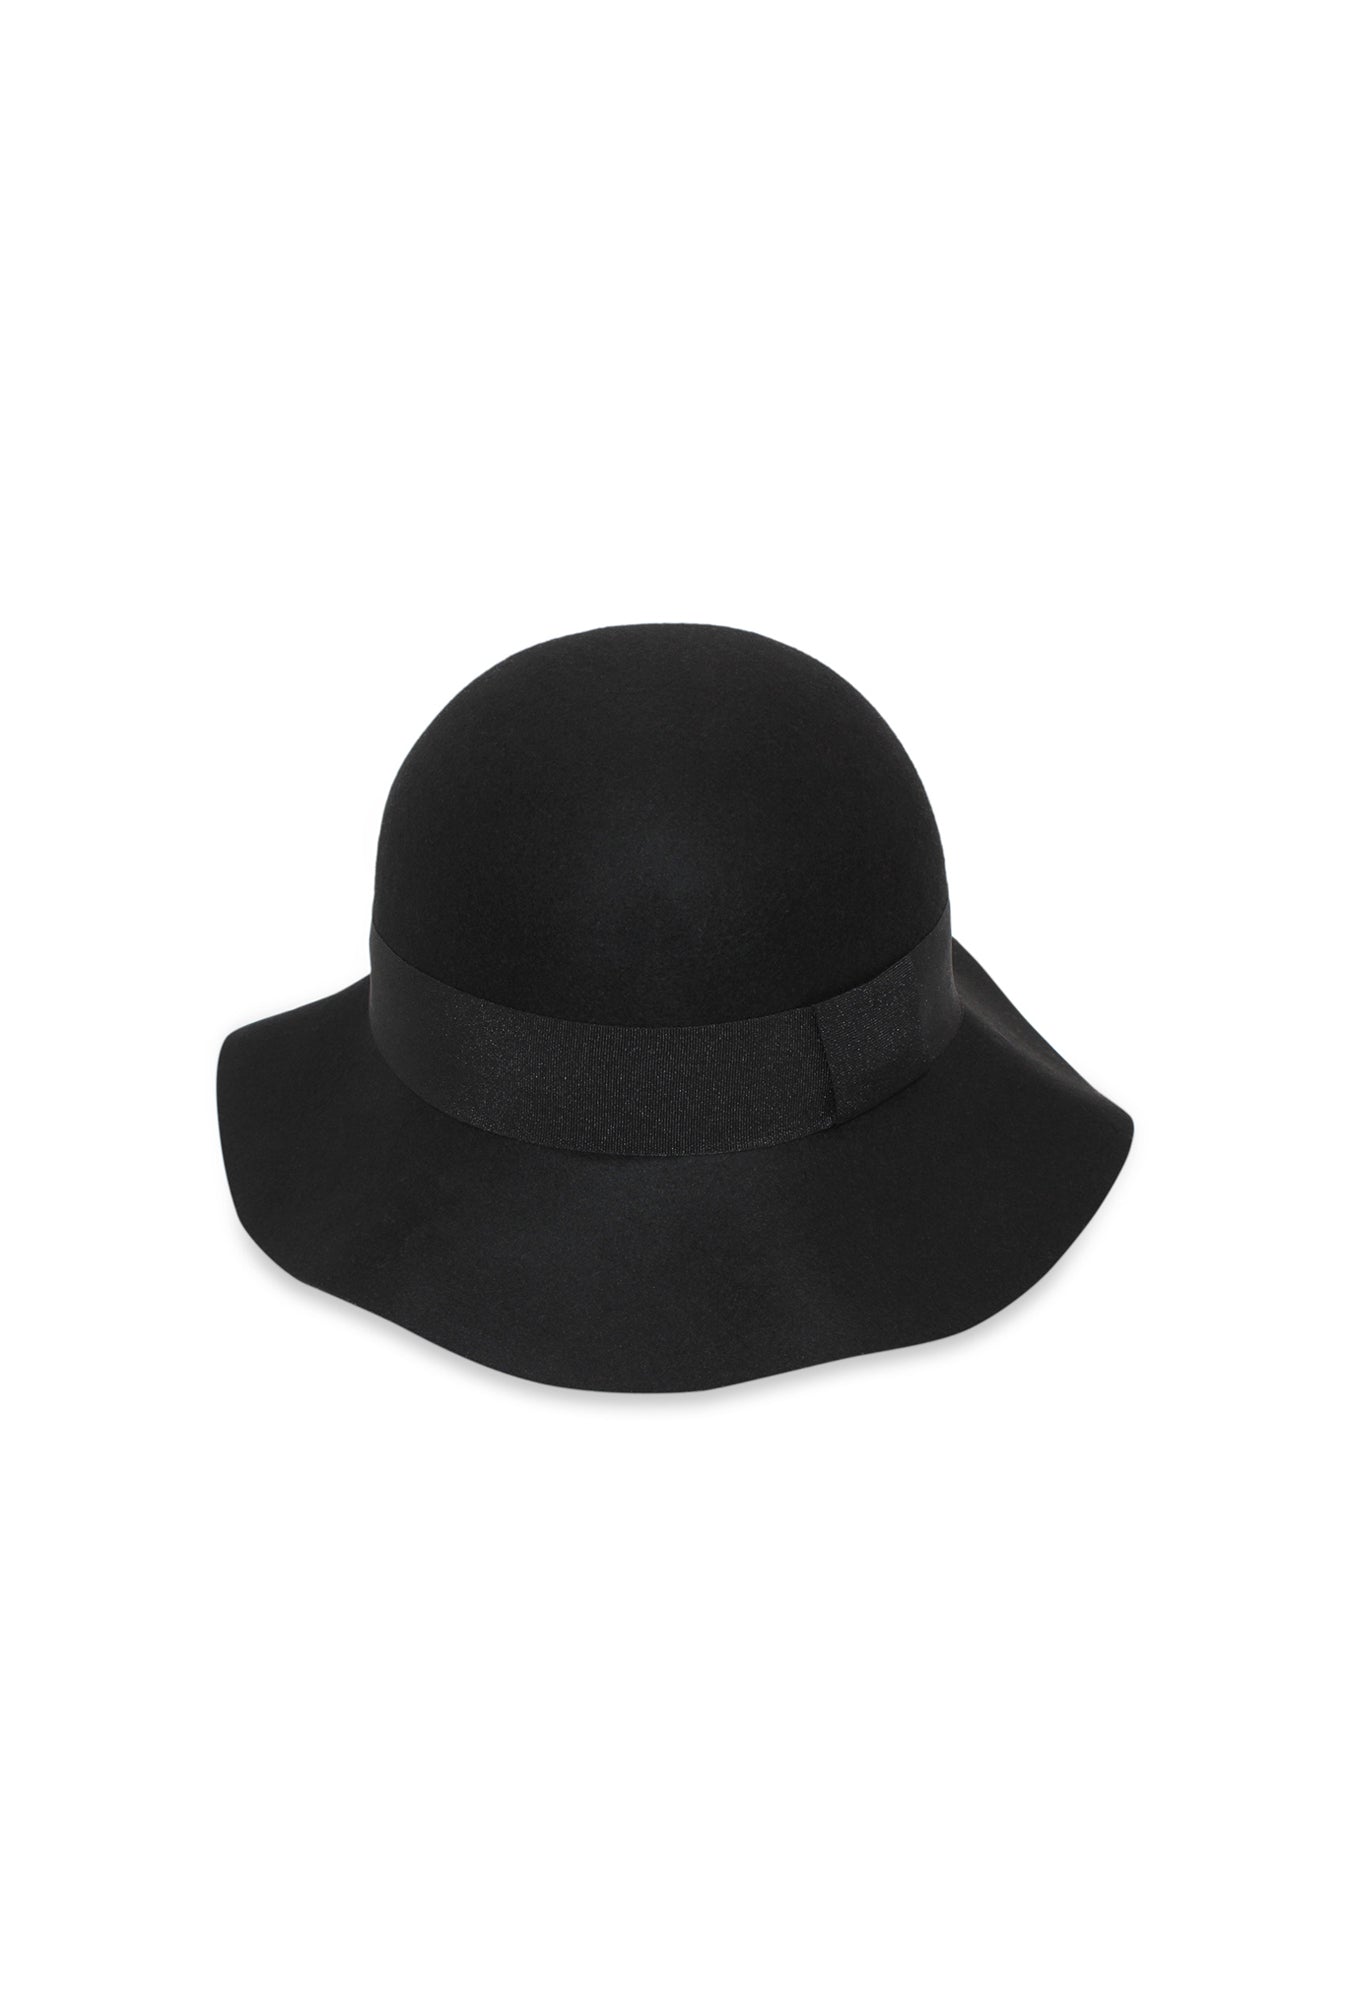 Eleanor Small Floppy Hat (Black)